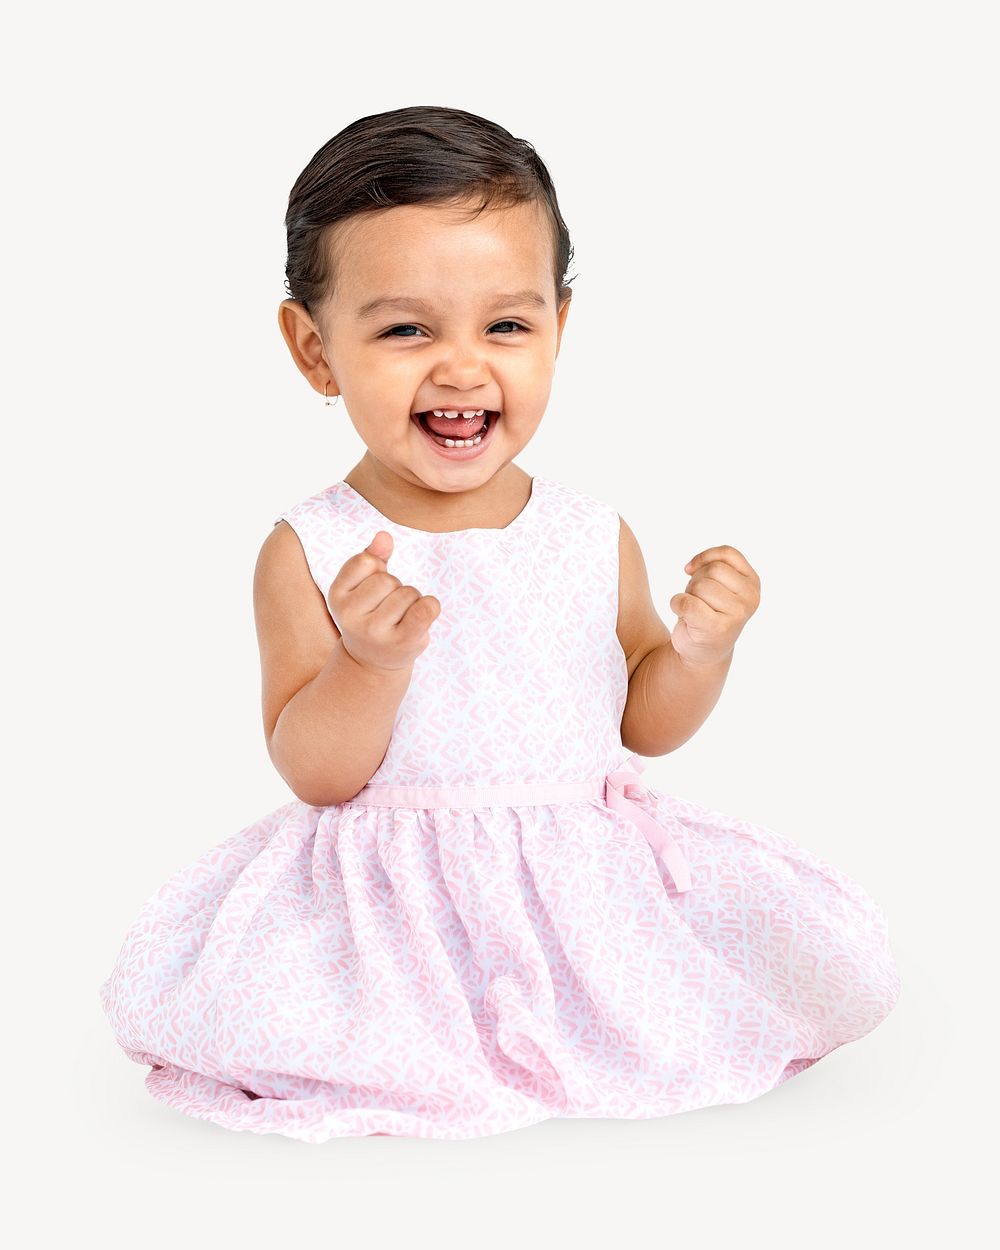 Cheerful baby girl isolated image